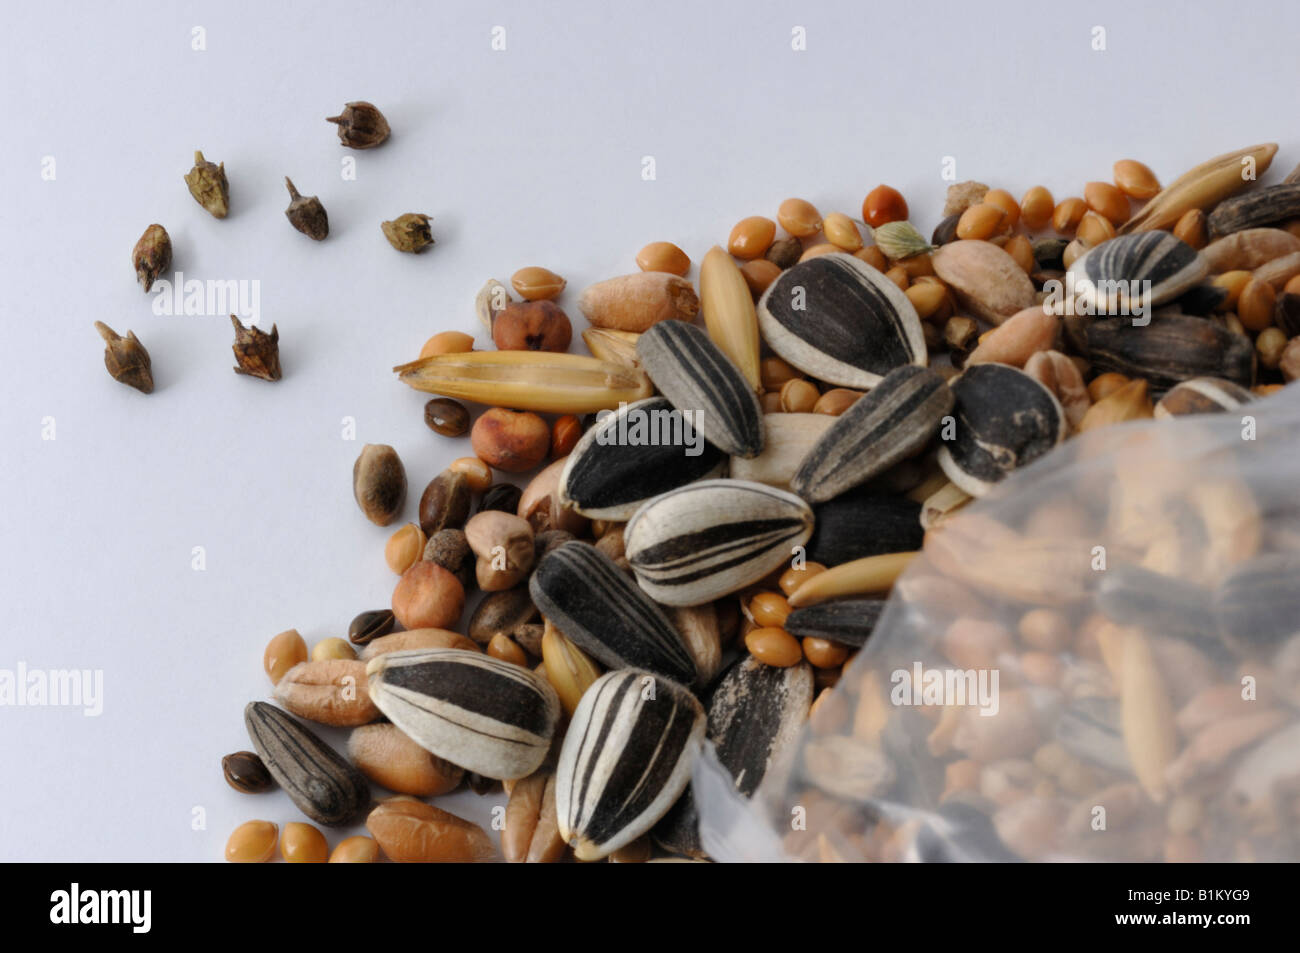 Ambrosía anual, la ambrosía común (Ambrosia artemisiifolia) semillas encontrados en los alimentos de aves Foto de stock